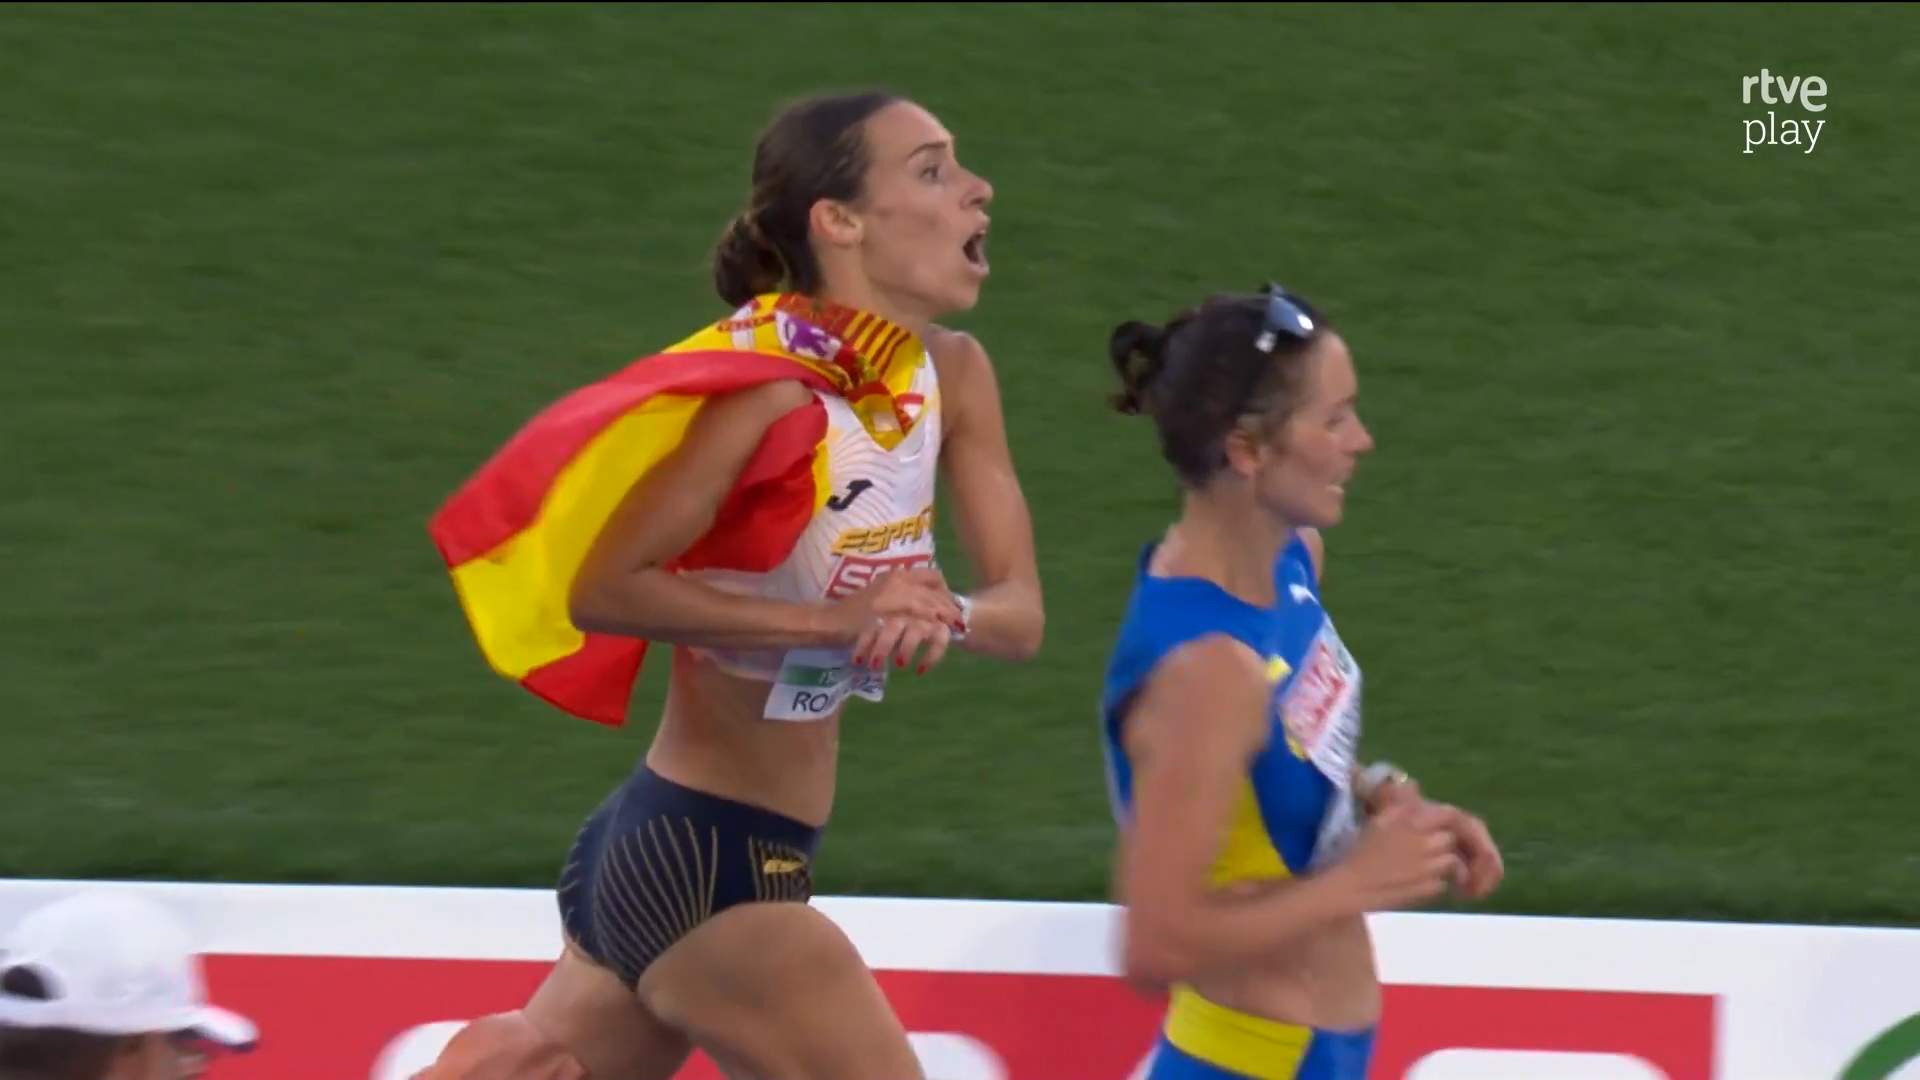 El vídeo viral de l'atleta espanyola Laura García-Caro, que perd el bronze en la línia de meta